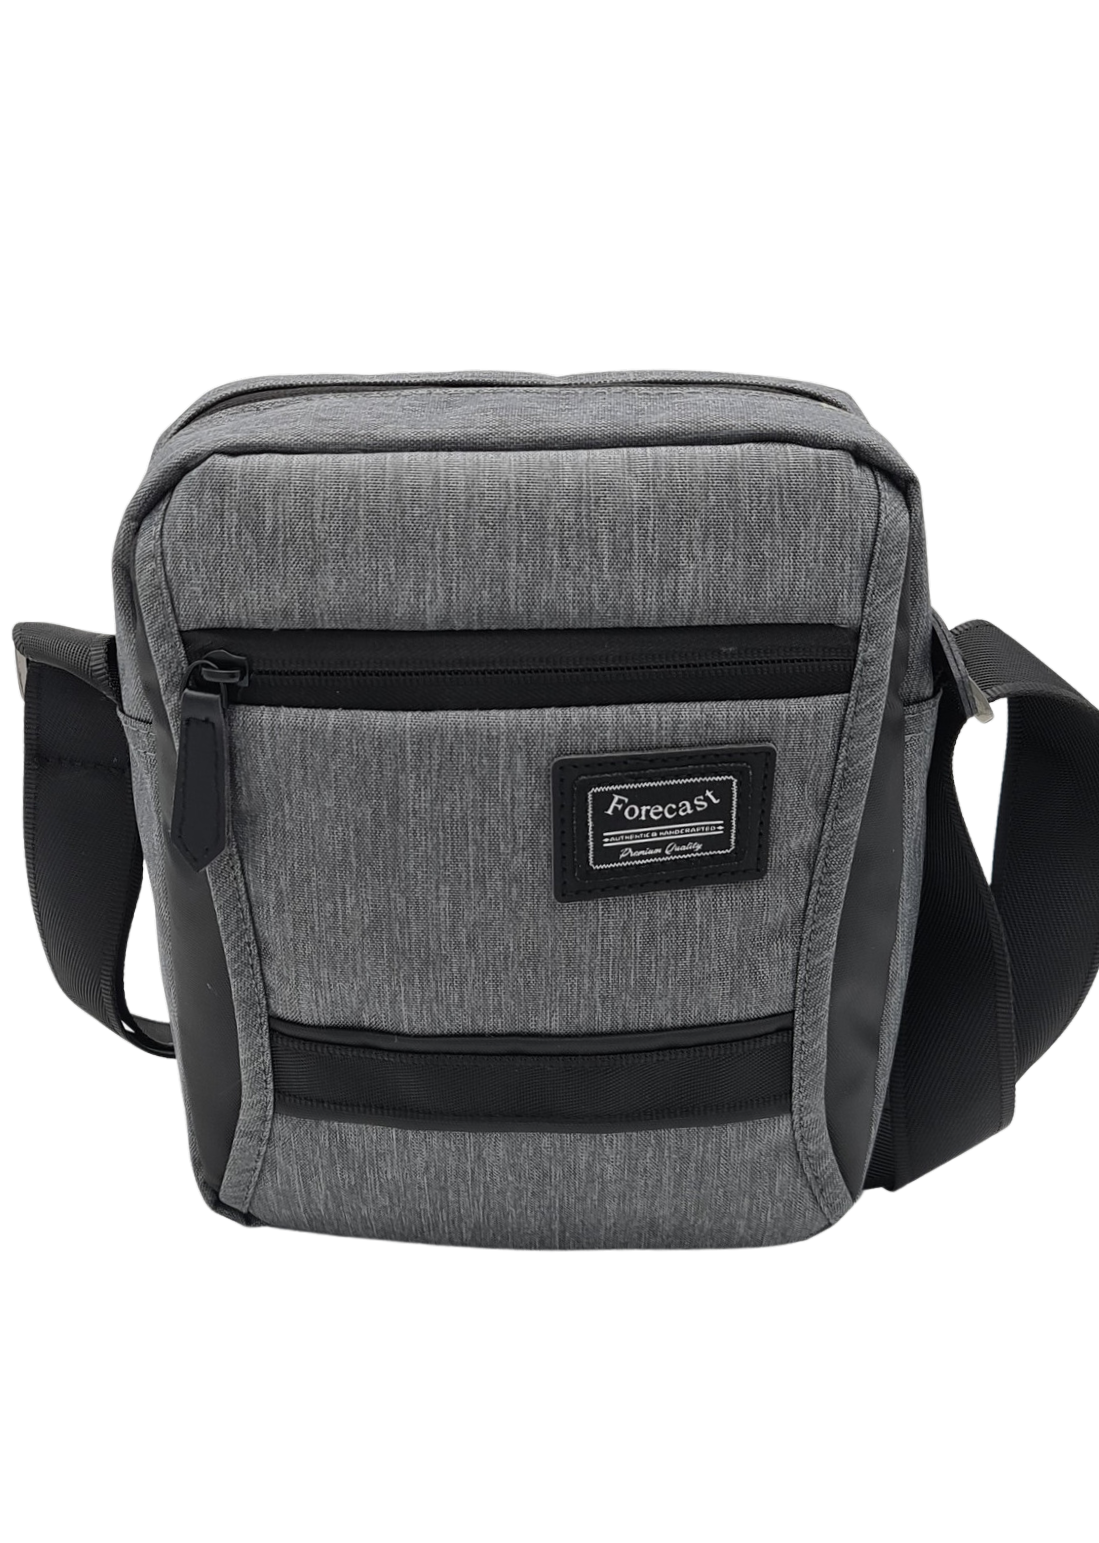 Forecast shoulder bag KB-62002 - Migant